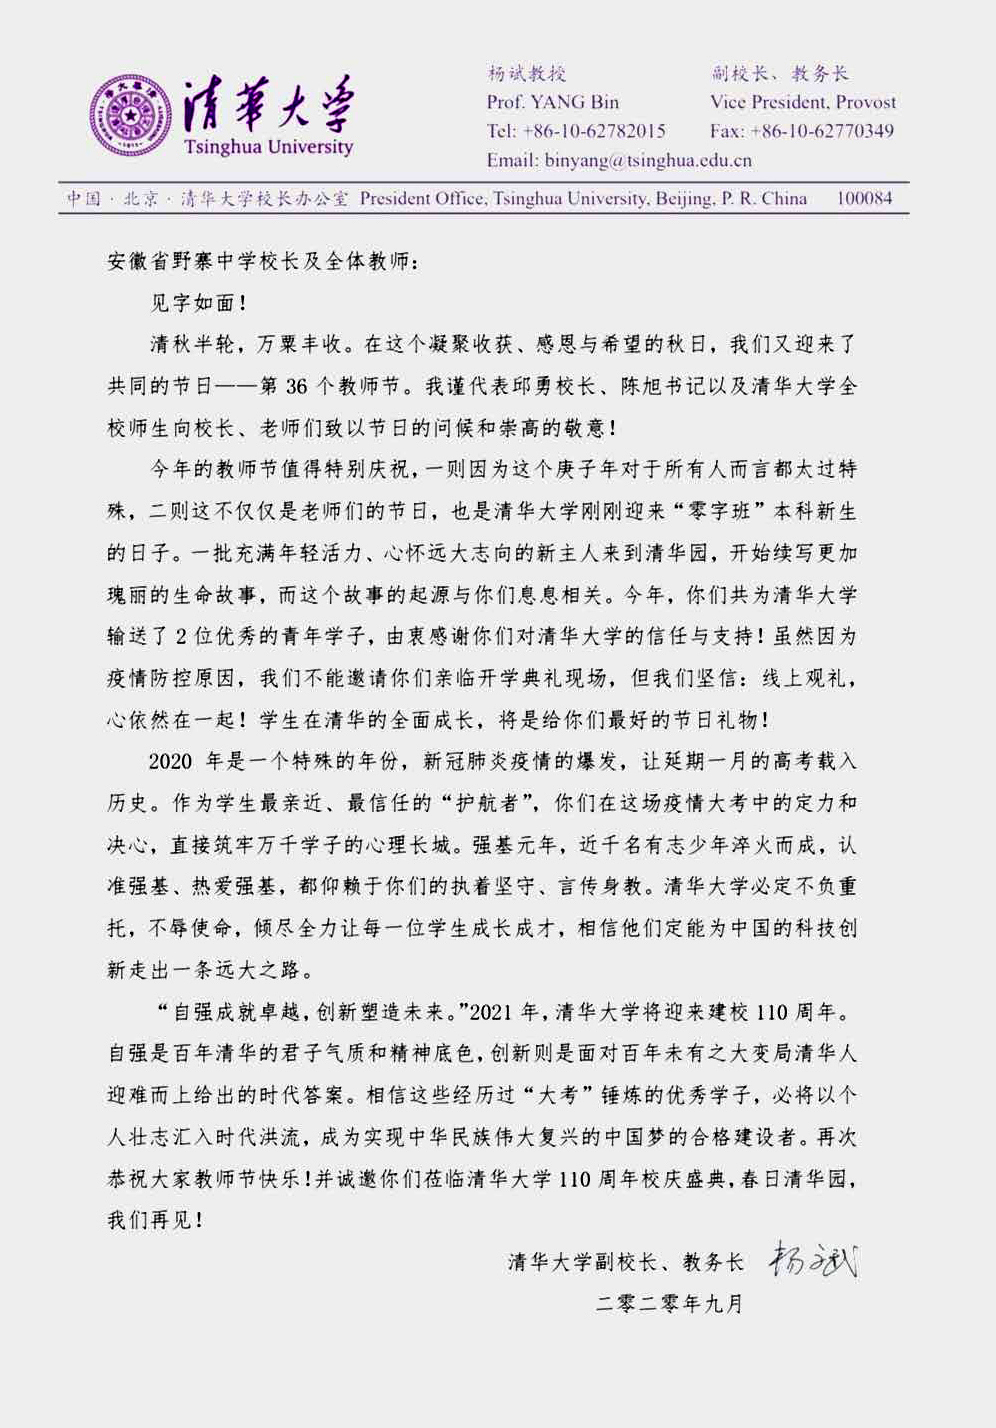 清华大学、北京大学给我校发来教师节慰问信